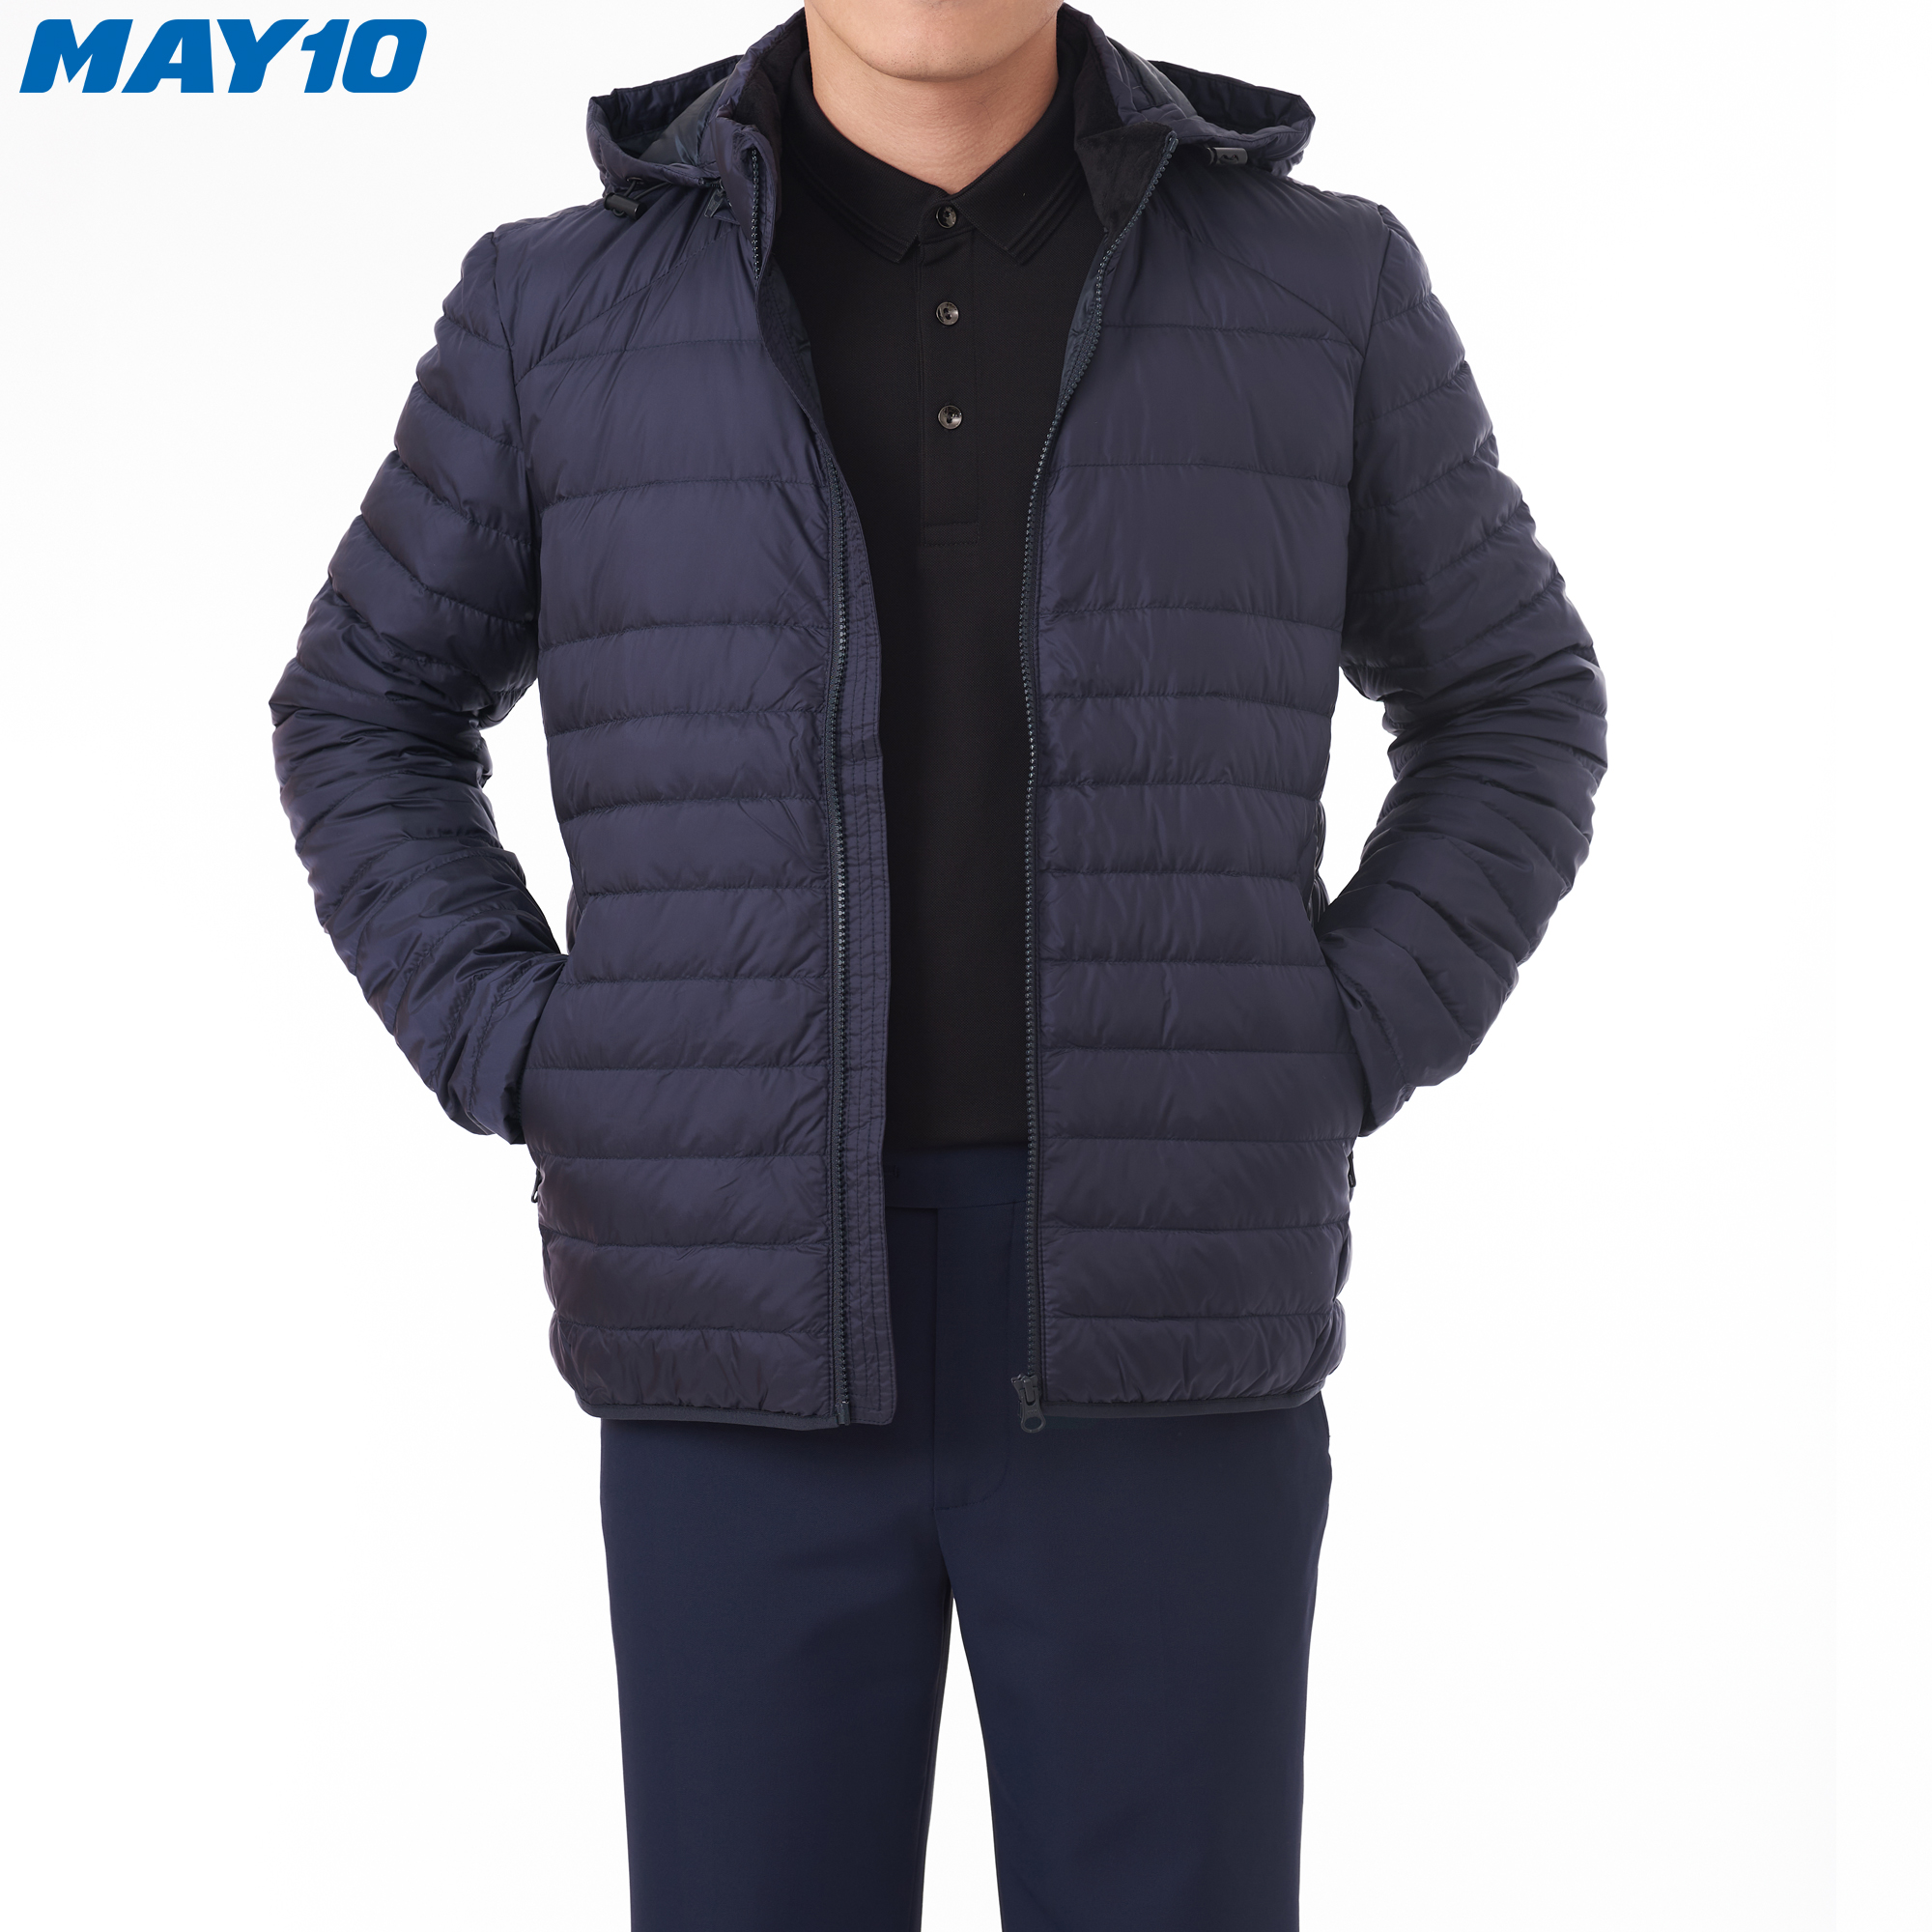 Áo khoác Jacket lông vũ nam (có mũ) May 10 mã 030121402LG màu NAVY